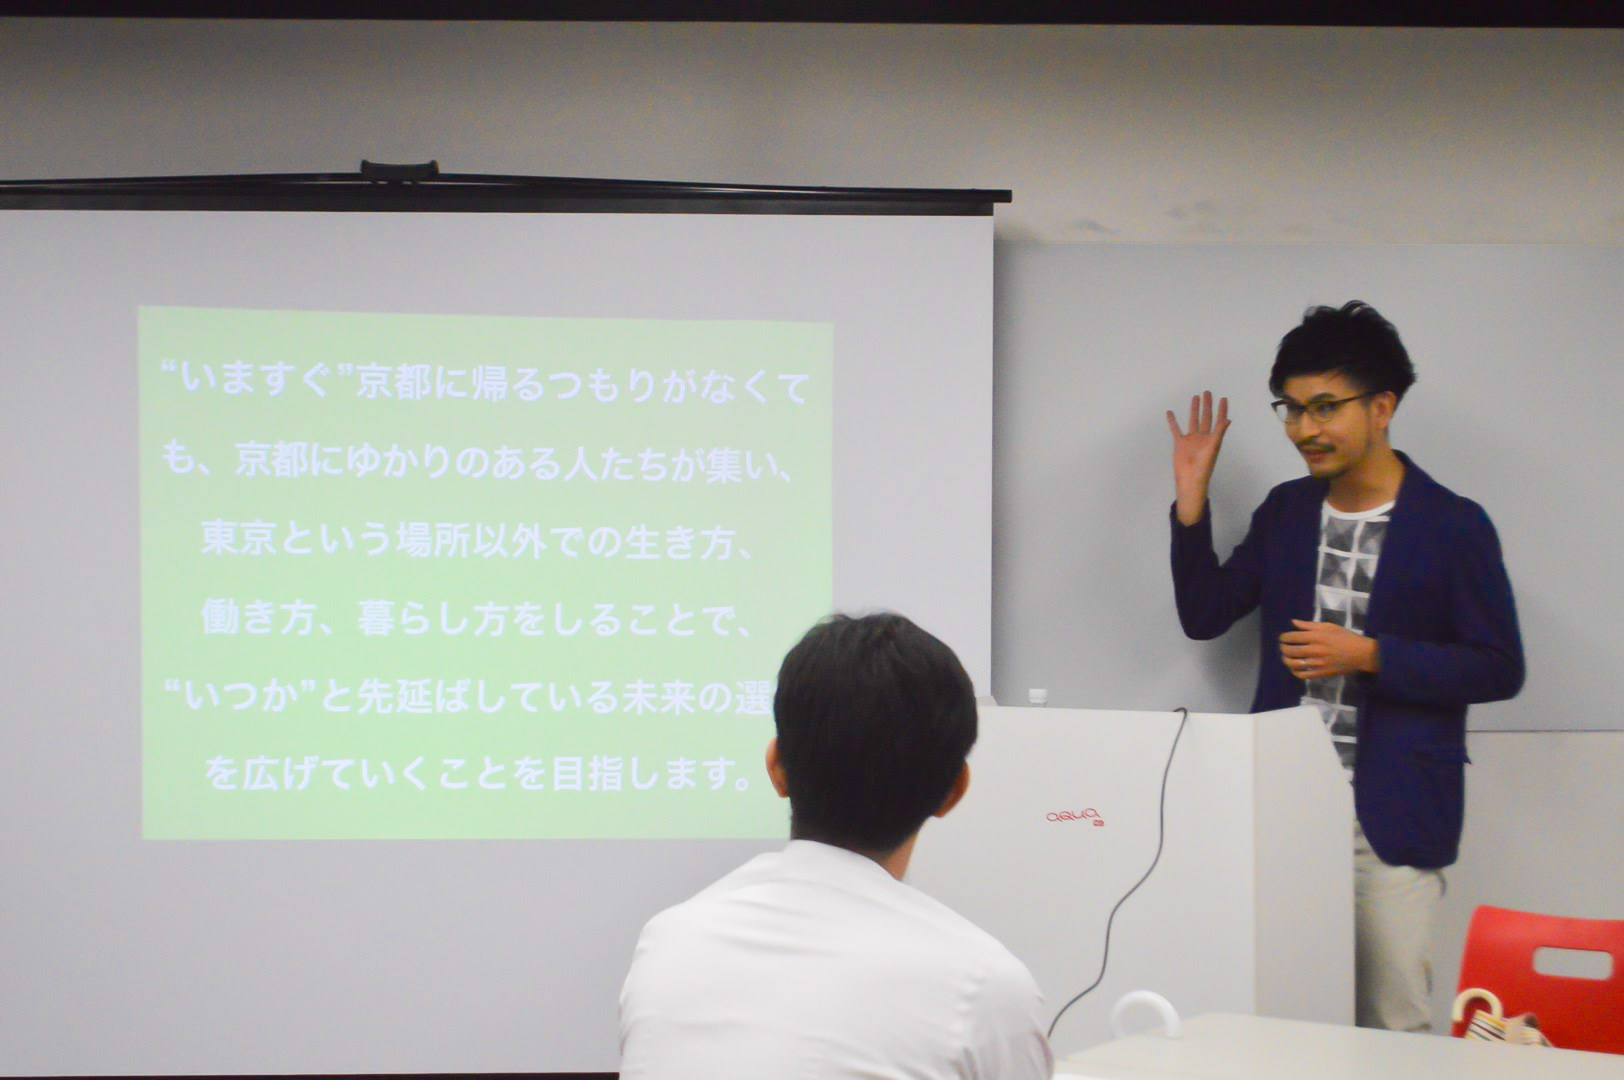 会の趣旨を話す、「京都移住計画」代表の田村。